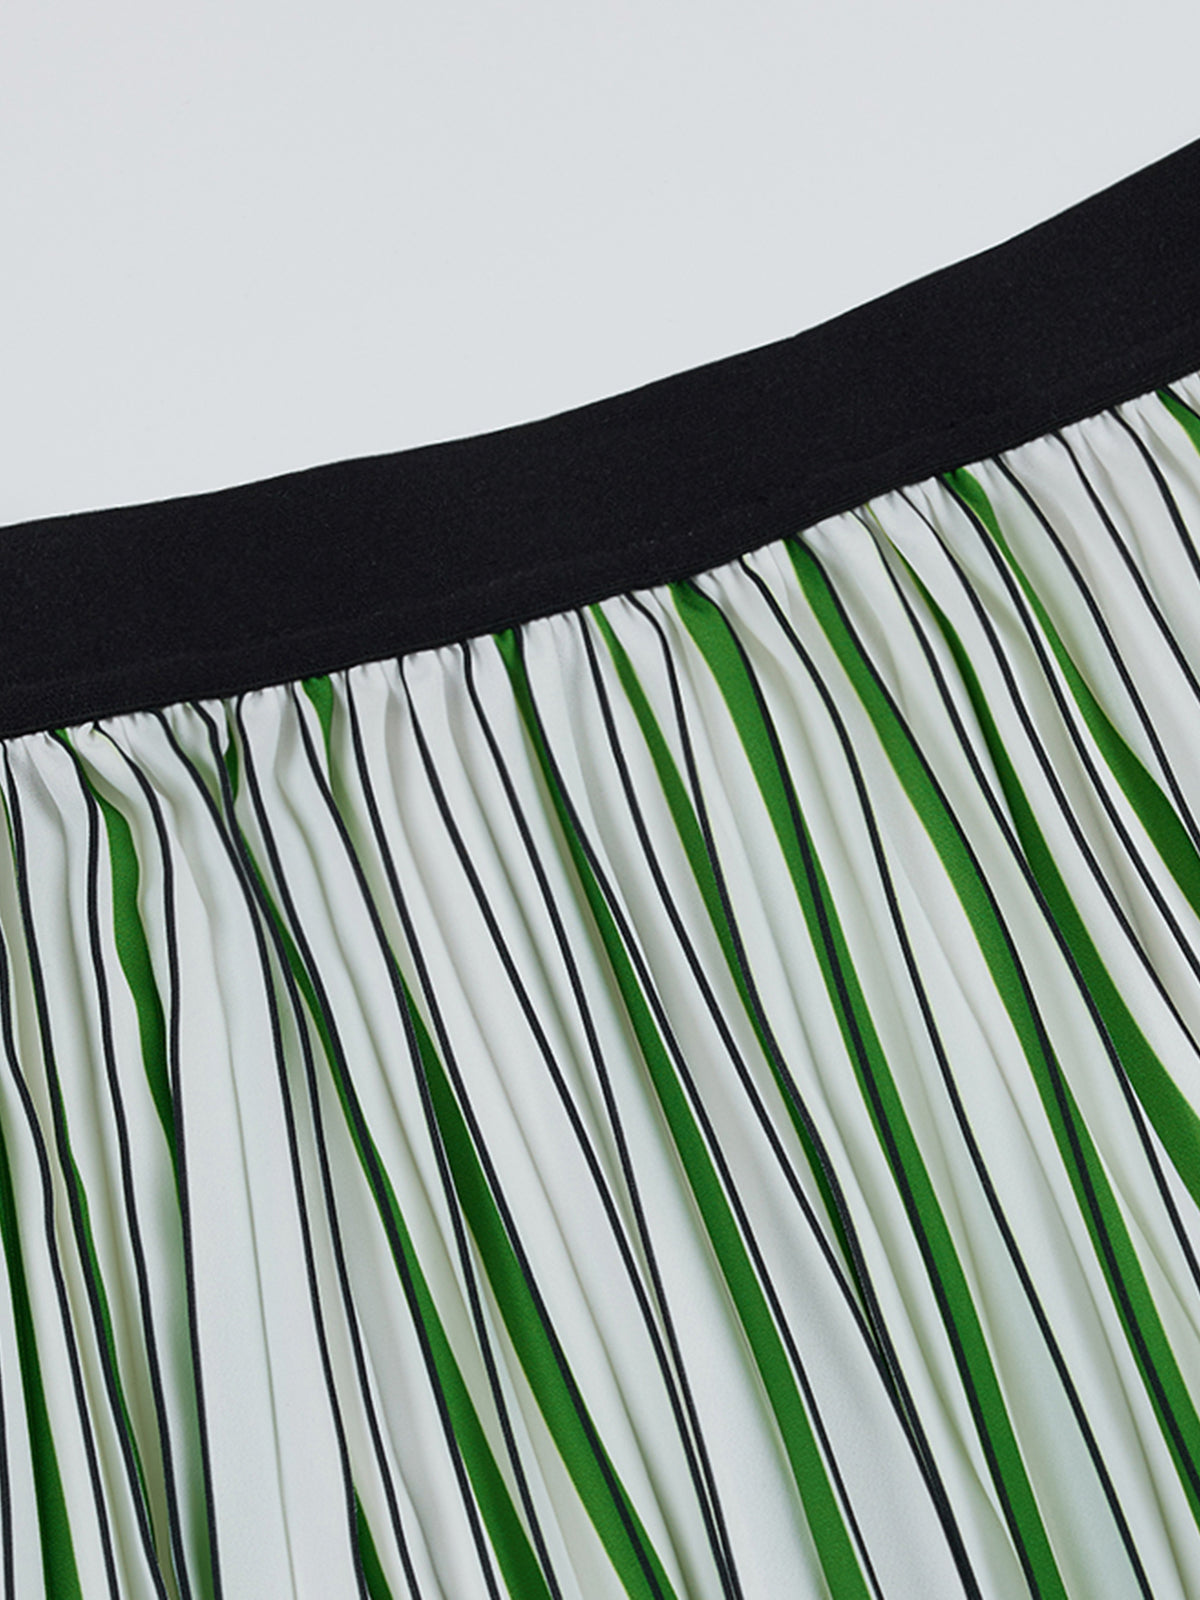 Pleated Striped Midi Skirt